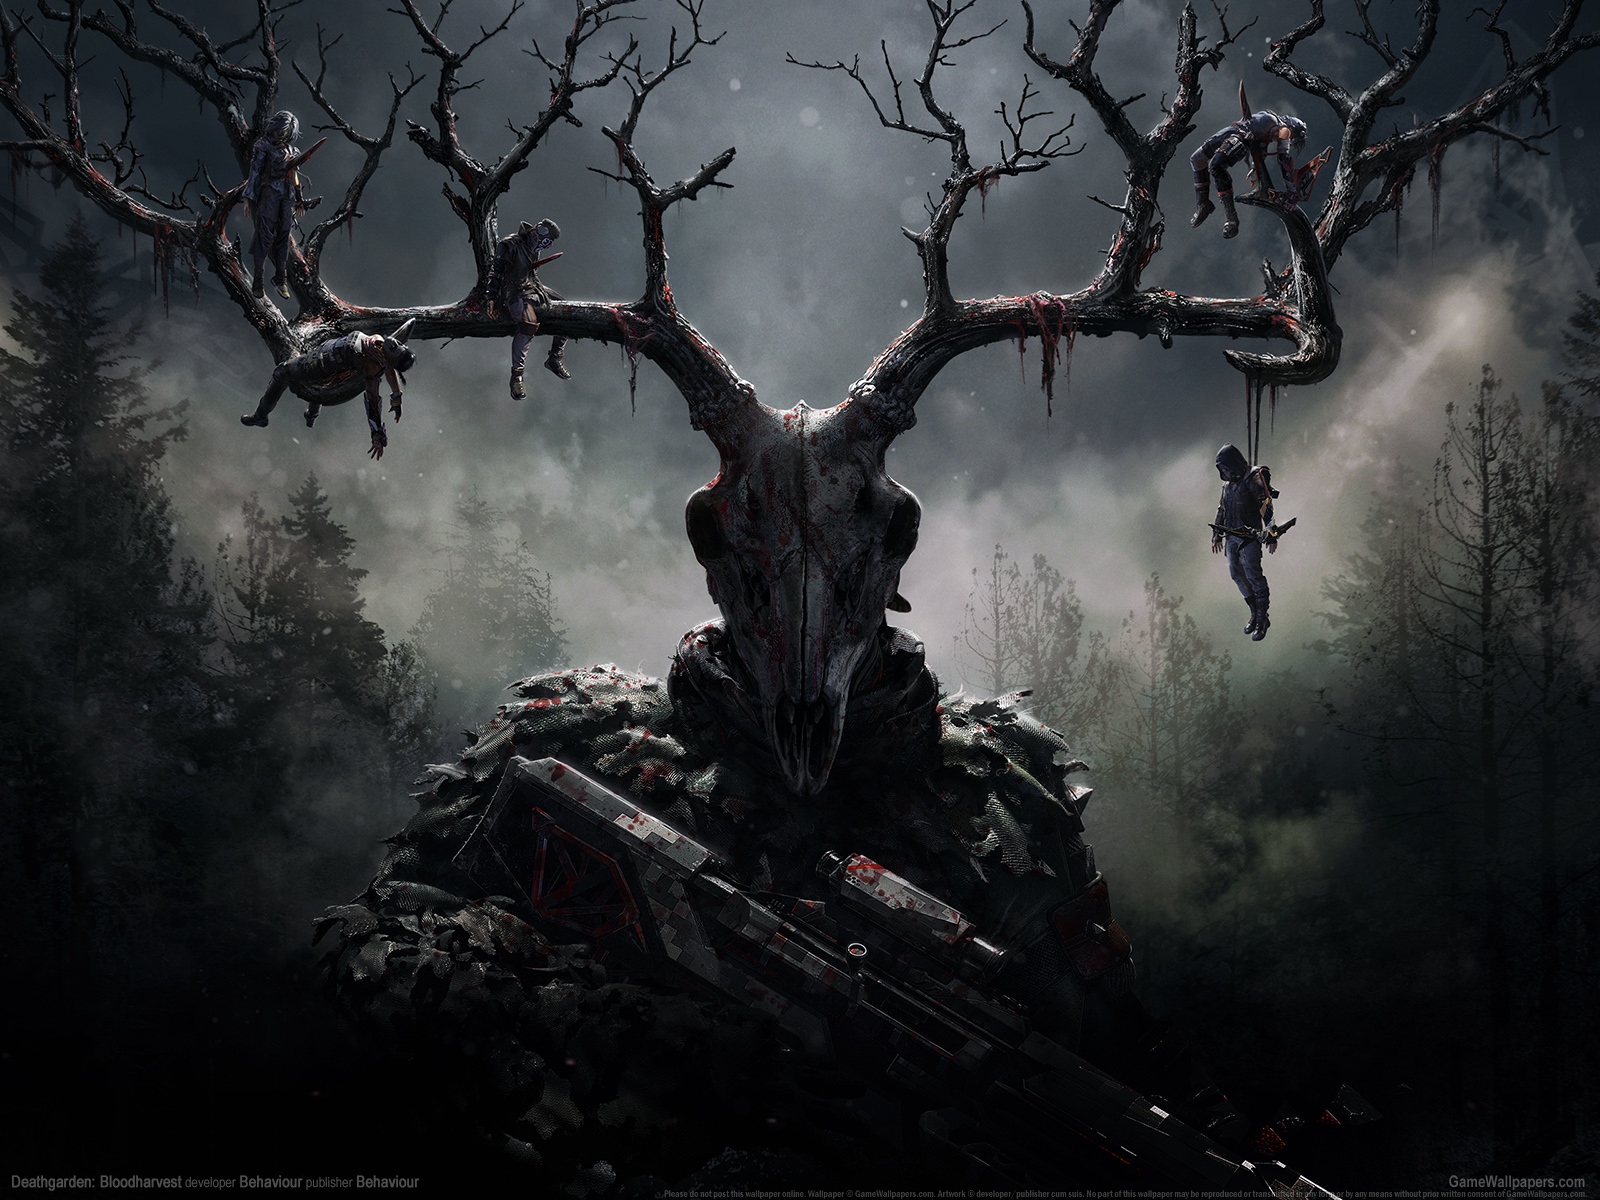 Deathgarden: Bloodharvest 1600 wallpaper or background 01